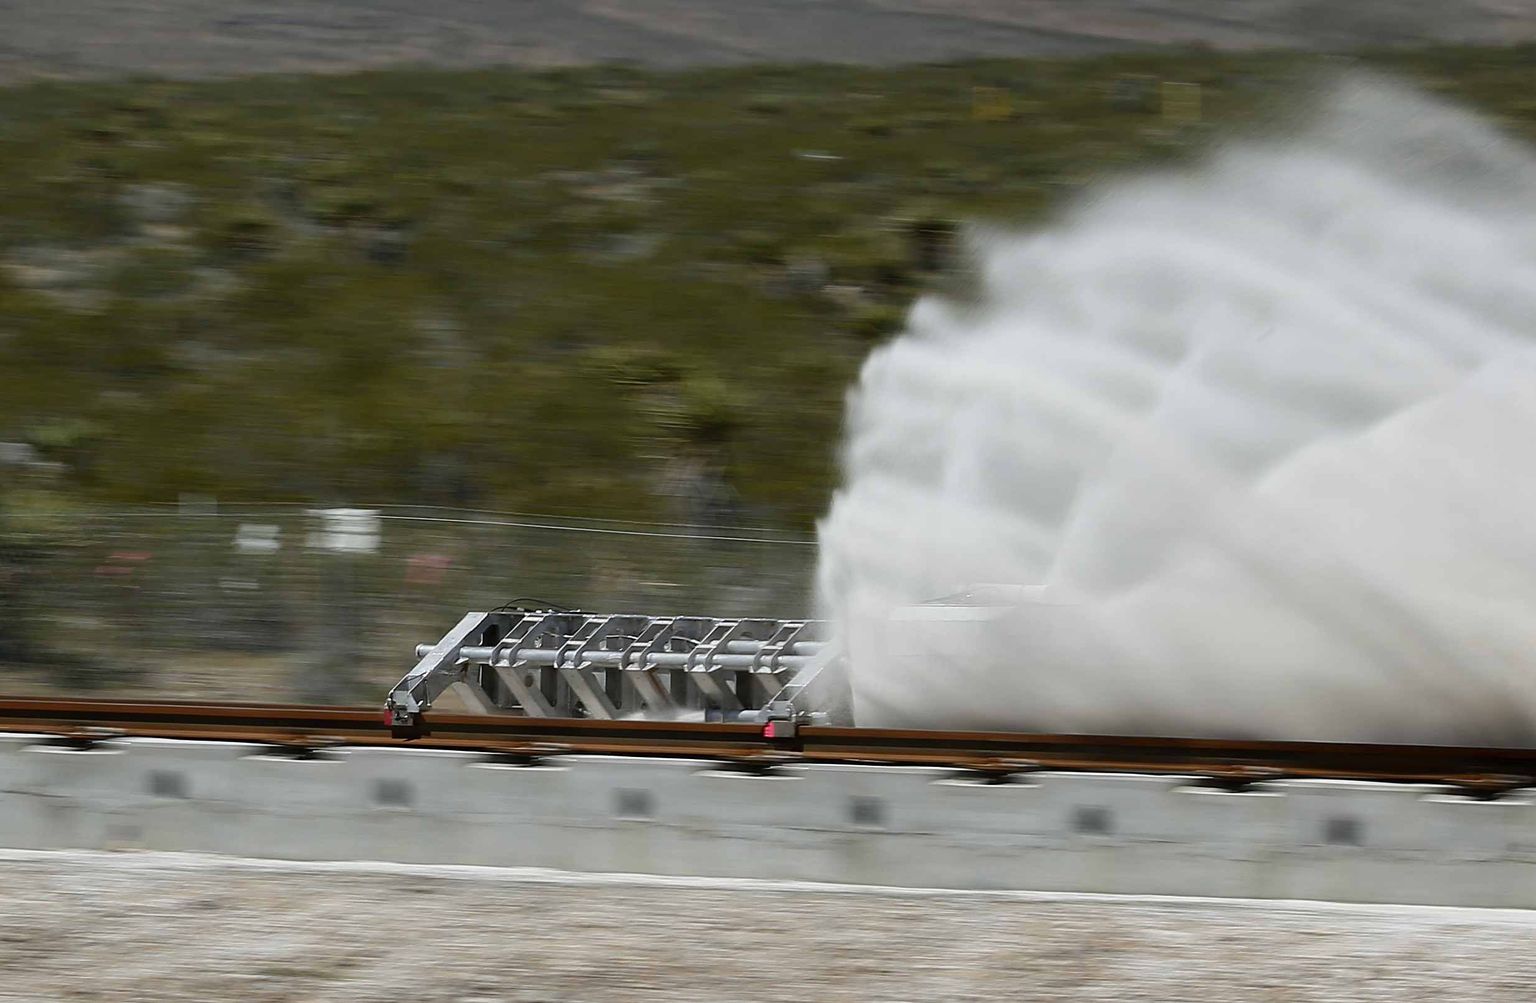 Möödunud nädalal testis Hyperloop One tehnoloogit, mis võib juba paari aasta pärast transpordiga inimesi kiirusel üle 1200 km/h. Pildil on näha testseadeldis pidurdamas pärast 1,1-sekundilist kiirendust saavutatud kiirust 190 km/h.